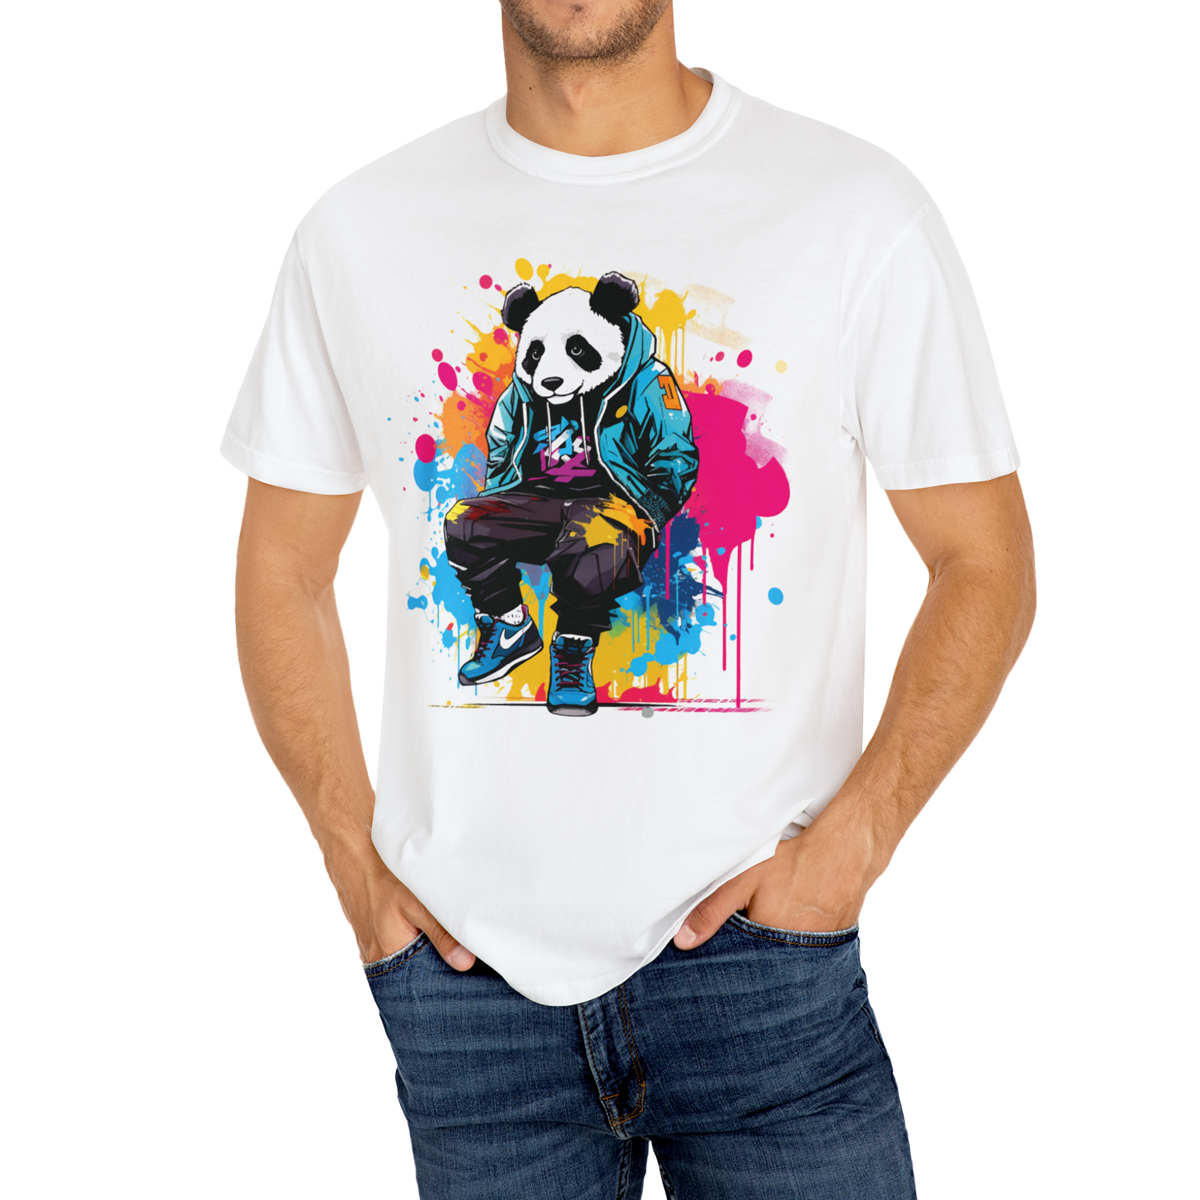 Áo Thun Nữ Màu Trắng In Hình Gấu Trúc Panda DLX35